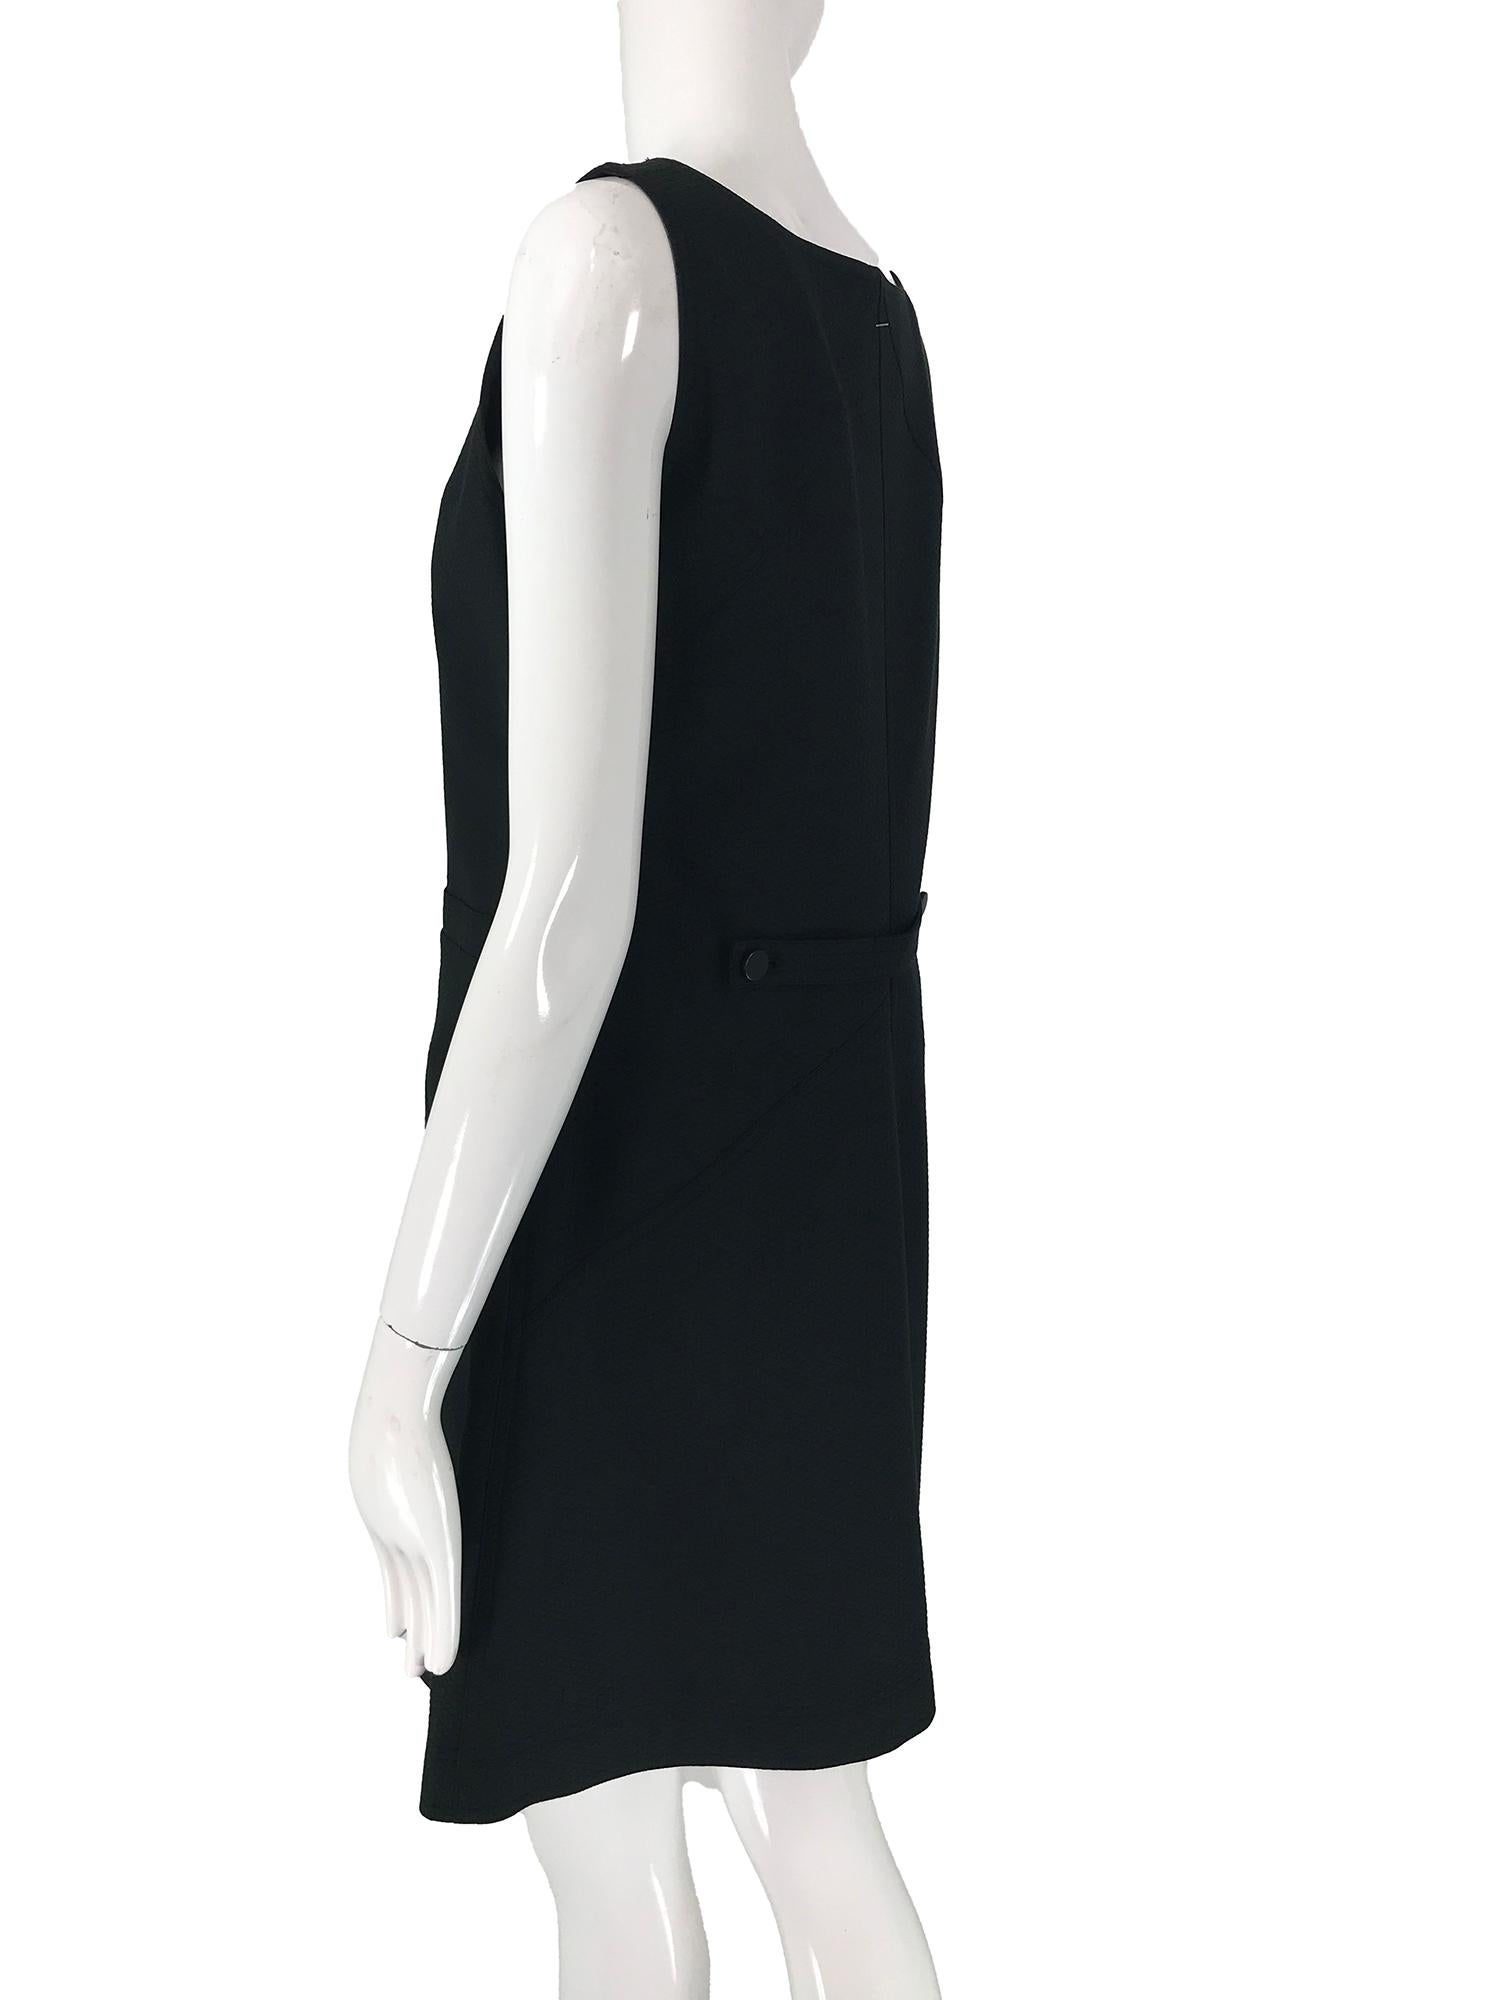 Courreges 100% Black Diamond Design Cotton A Line Shift Dress 40 1980s 4